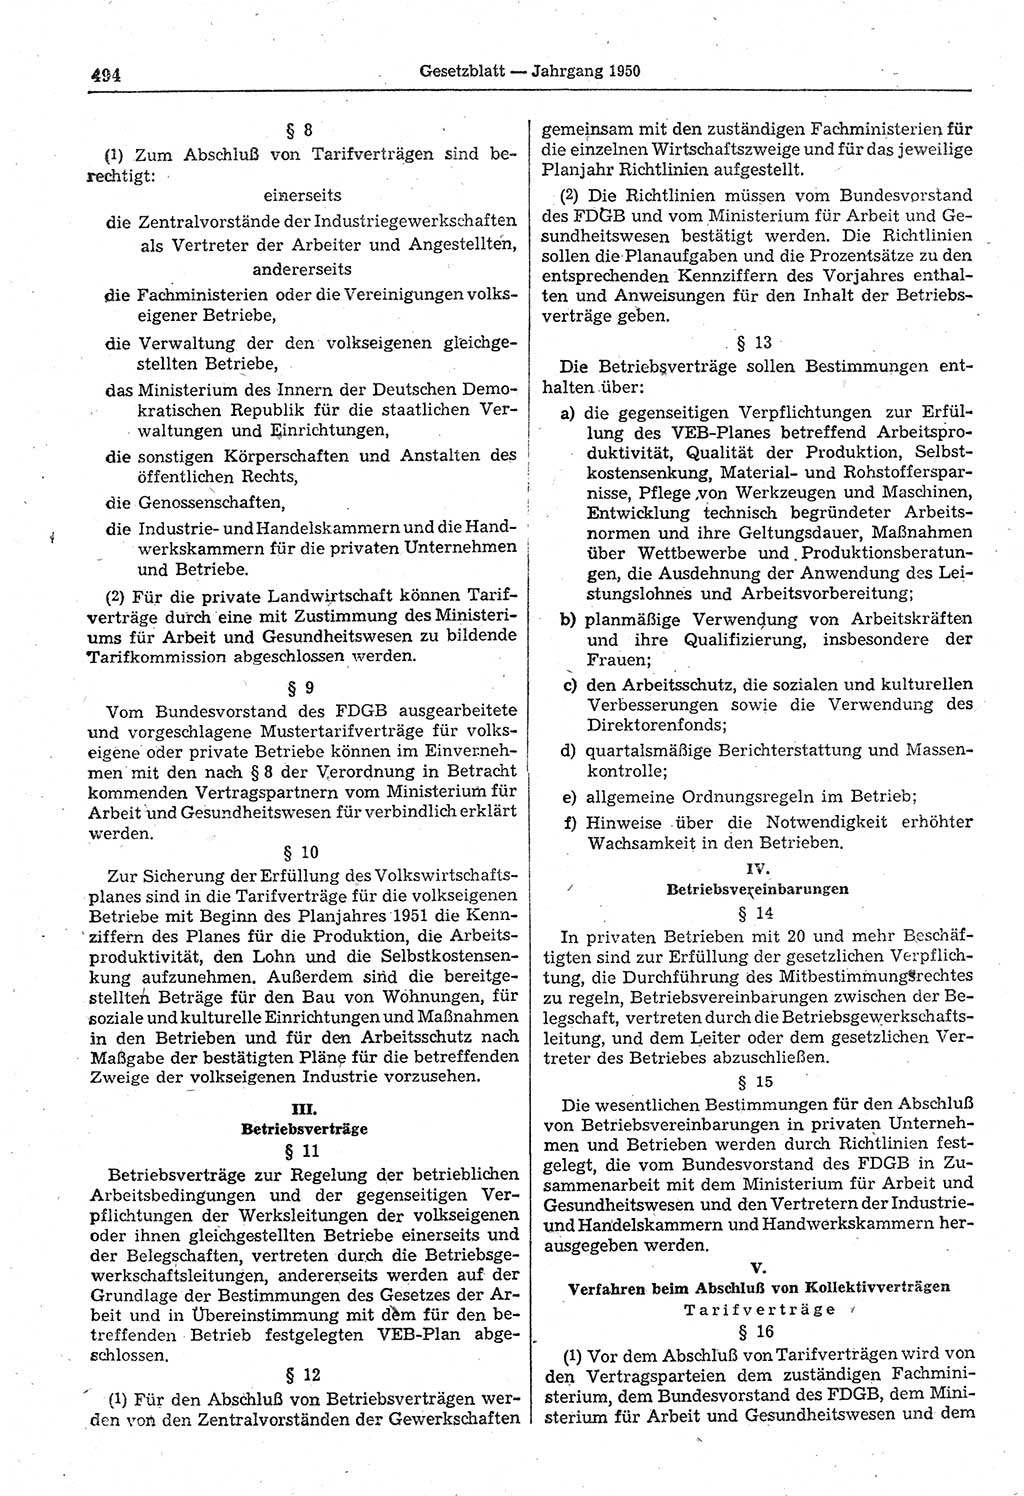 Gesetzblatt (GBl.) der Deutschen Demokratischen Republik (DDR) 1950, Seite 494 (GBl. DDR 1950, S. 494)